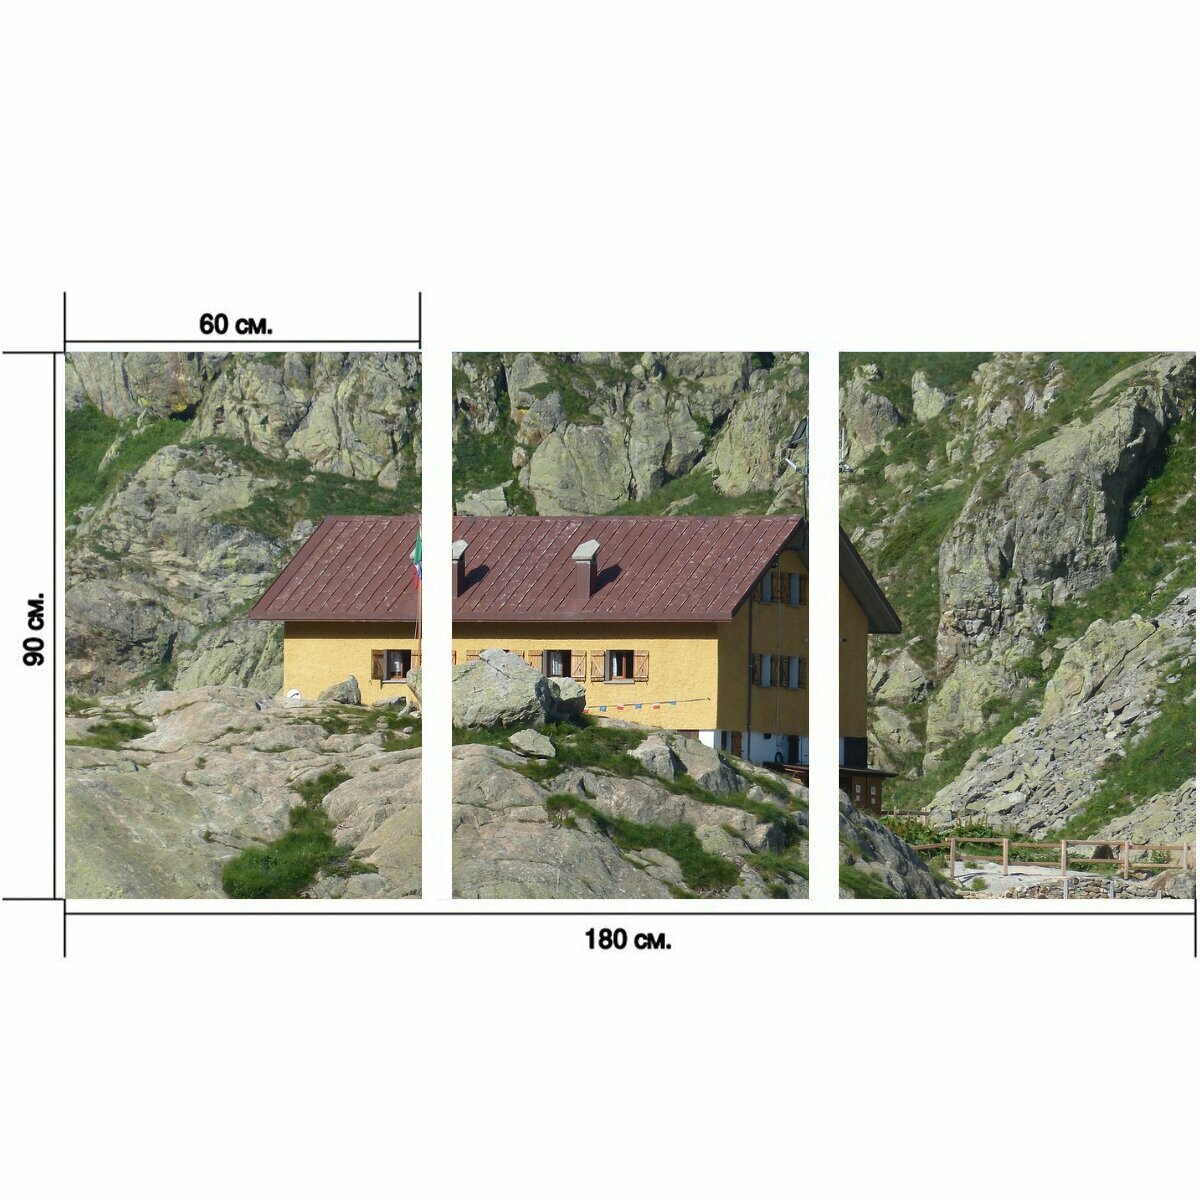 Модульный постер "Дом, хижина, горная хижина" 180 x 90 см. для интерьера